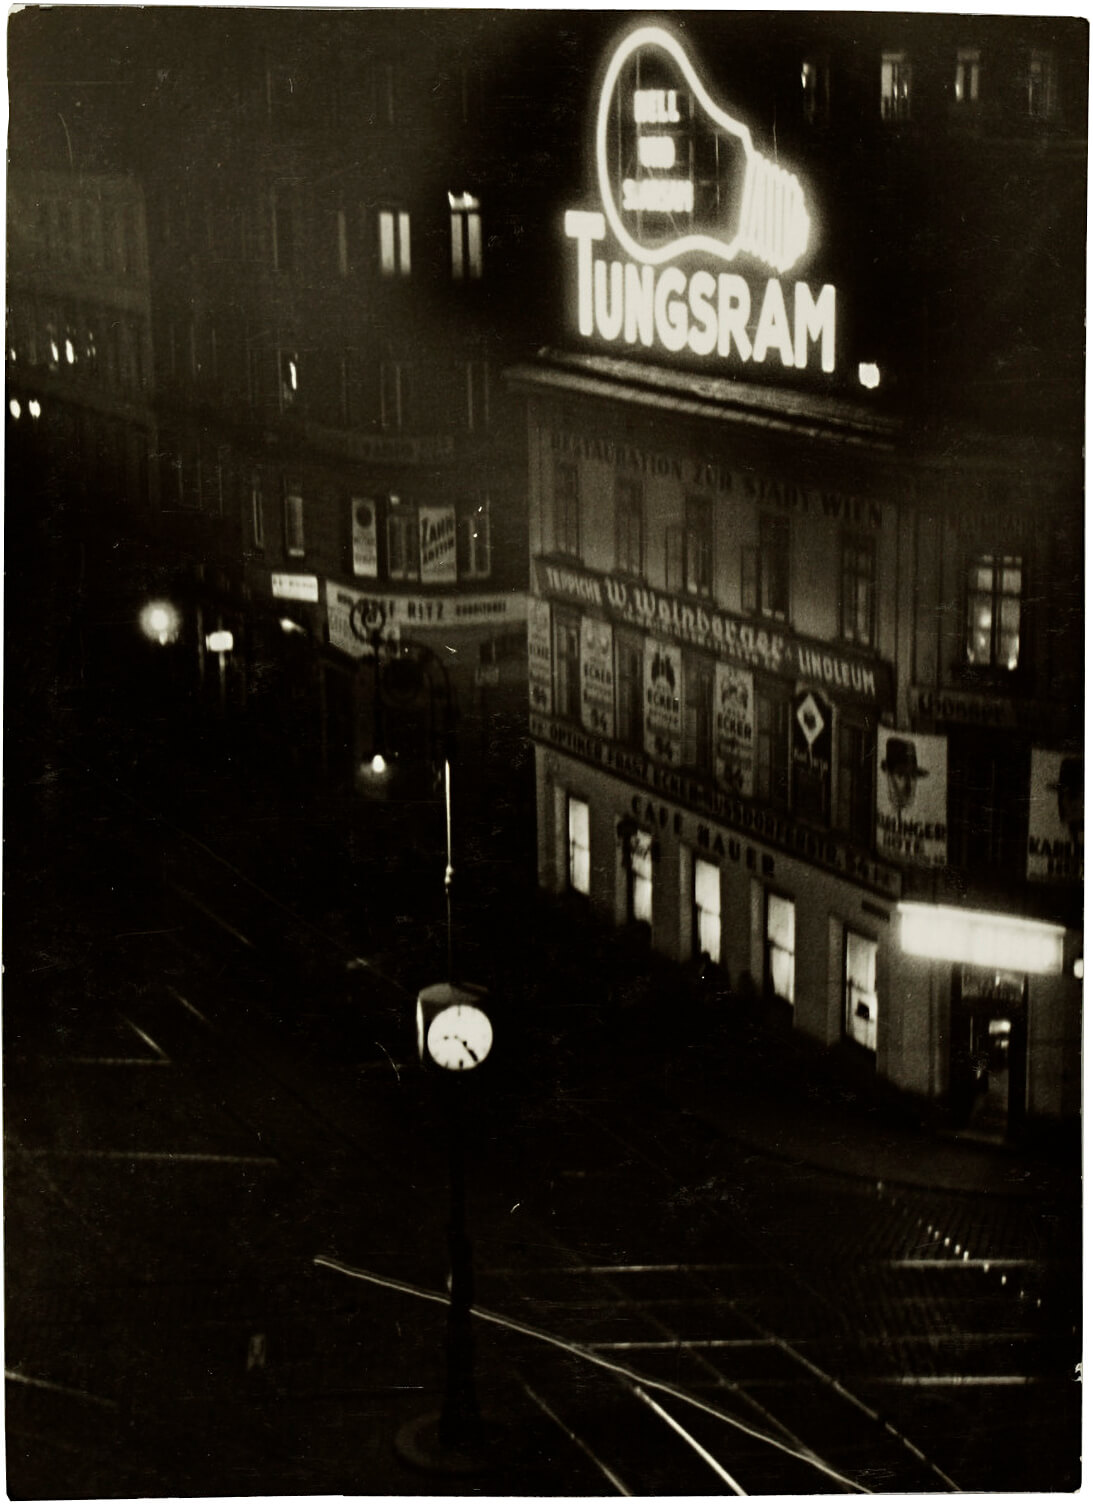 Leuchtreklame Ecke Währinger Straße/Nußdorfer Straße, anonyme Fotografie, um 1930, Wien Museum 